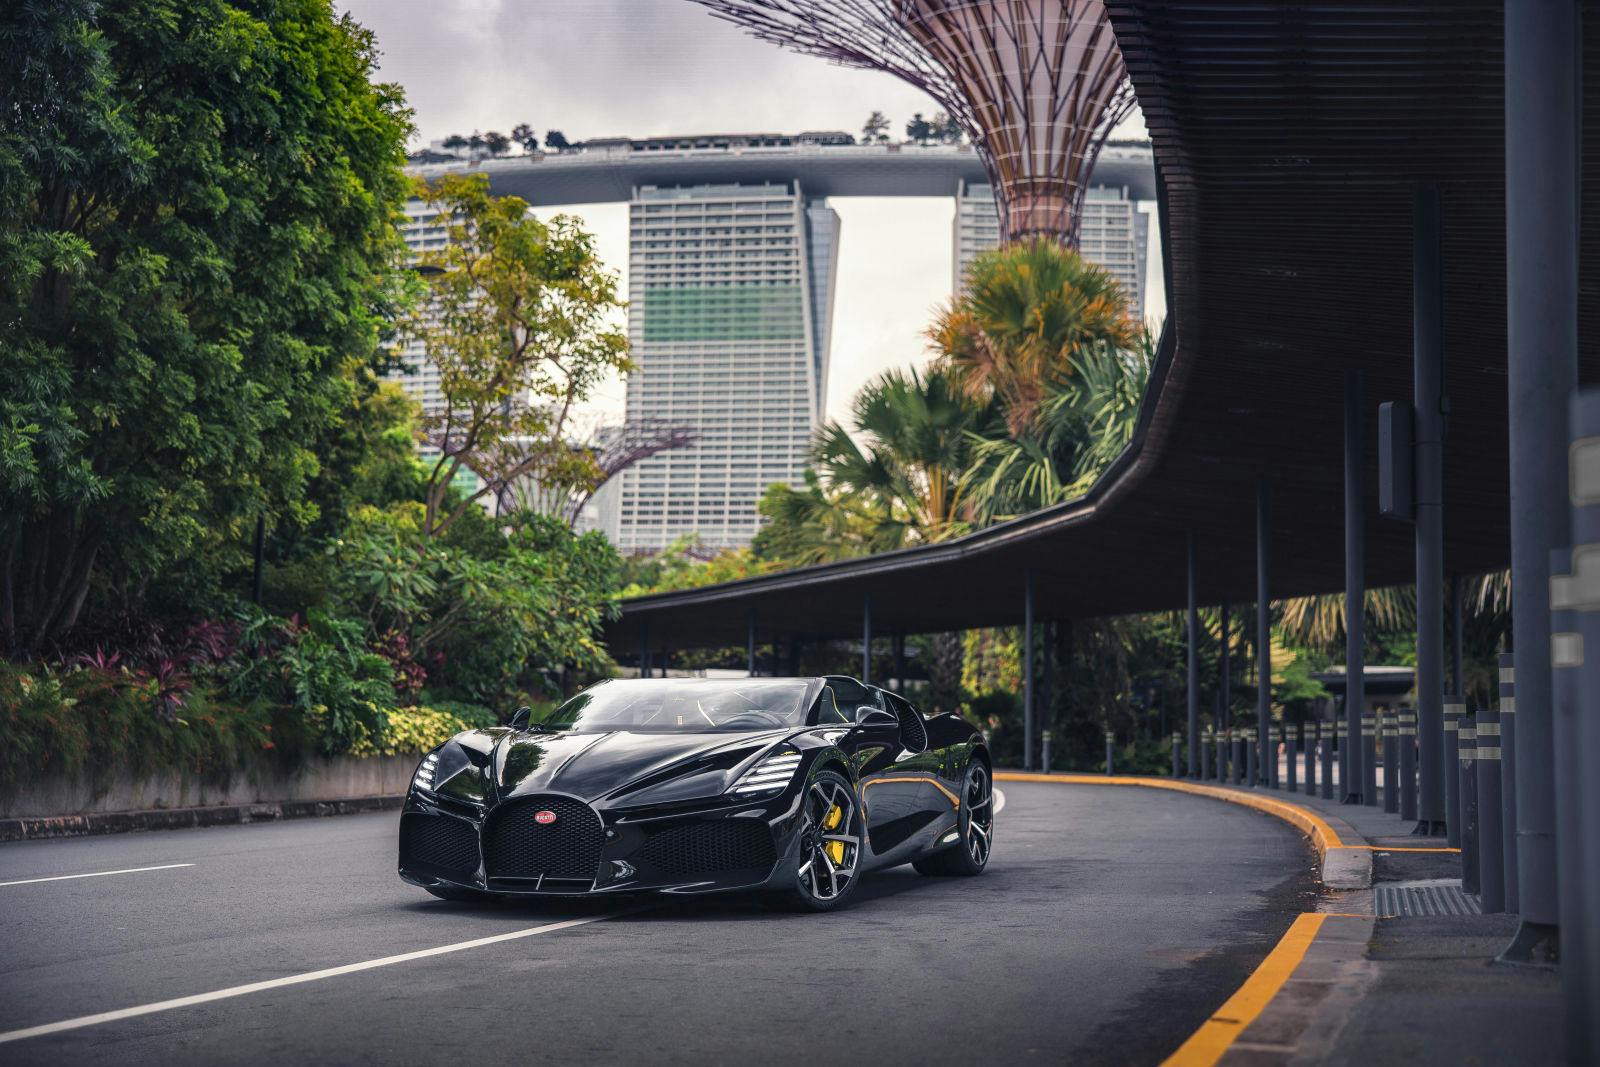 La Bugatti W16 Mistral a exploré Singapour, offrant une vue incroyable sur l’iconique hôtel Marina Bay Sands et le parc luxuriant Gardens by the Bay.